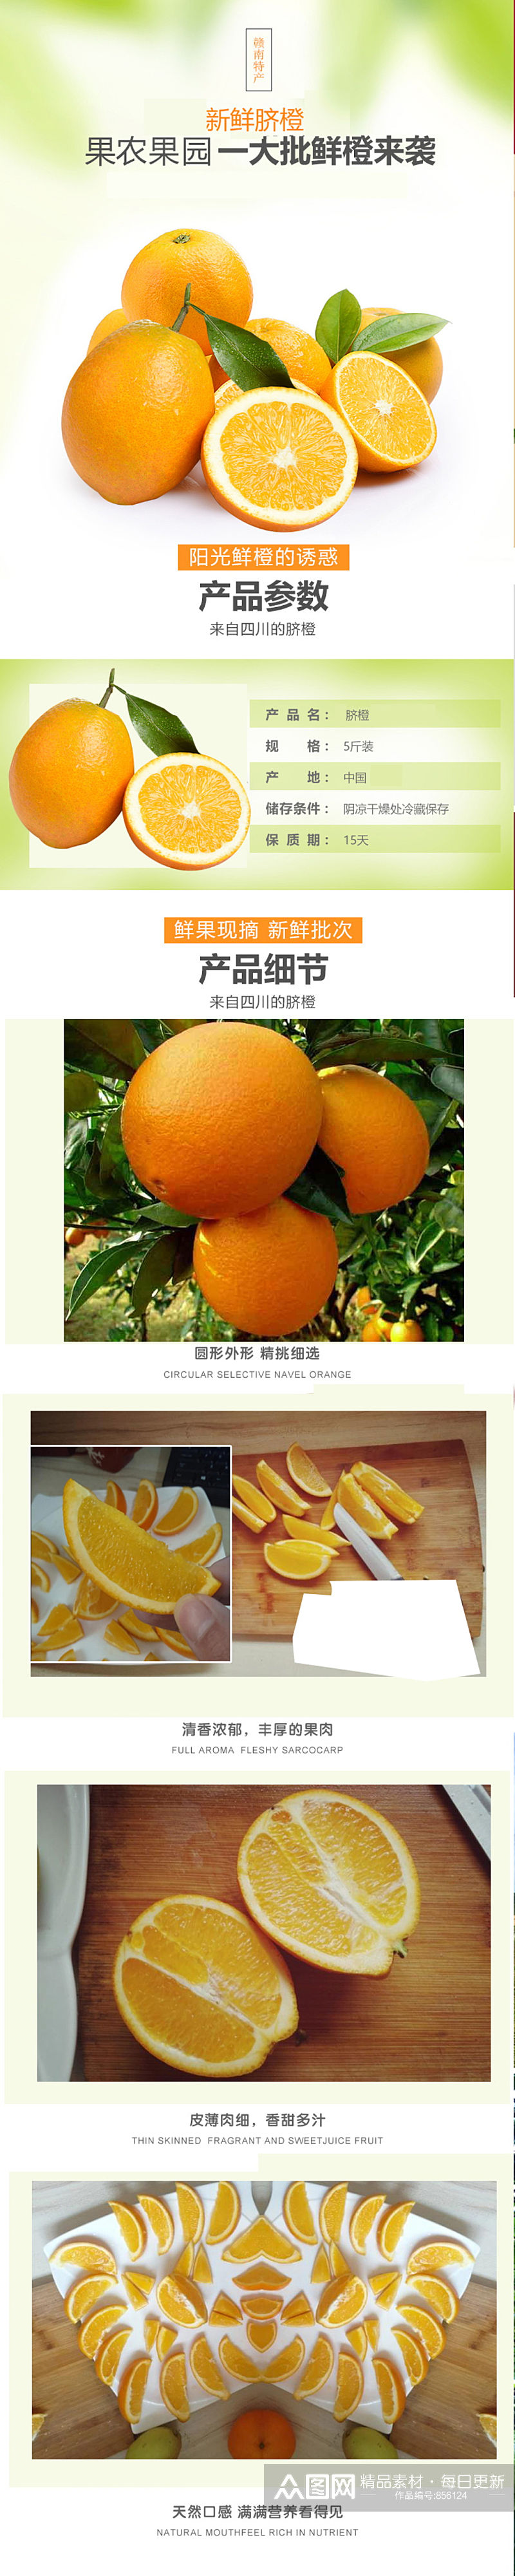 淘宝电商赣南橙柑橘橙子水果生鲜详情页素材